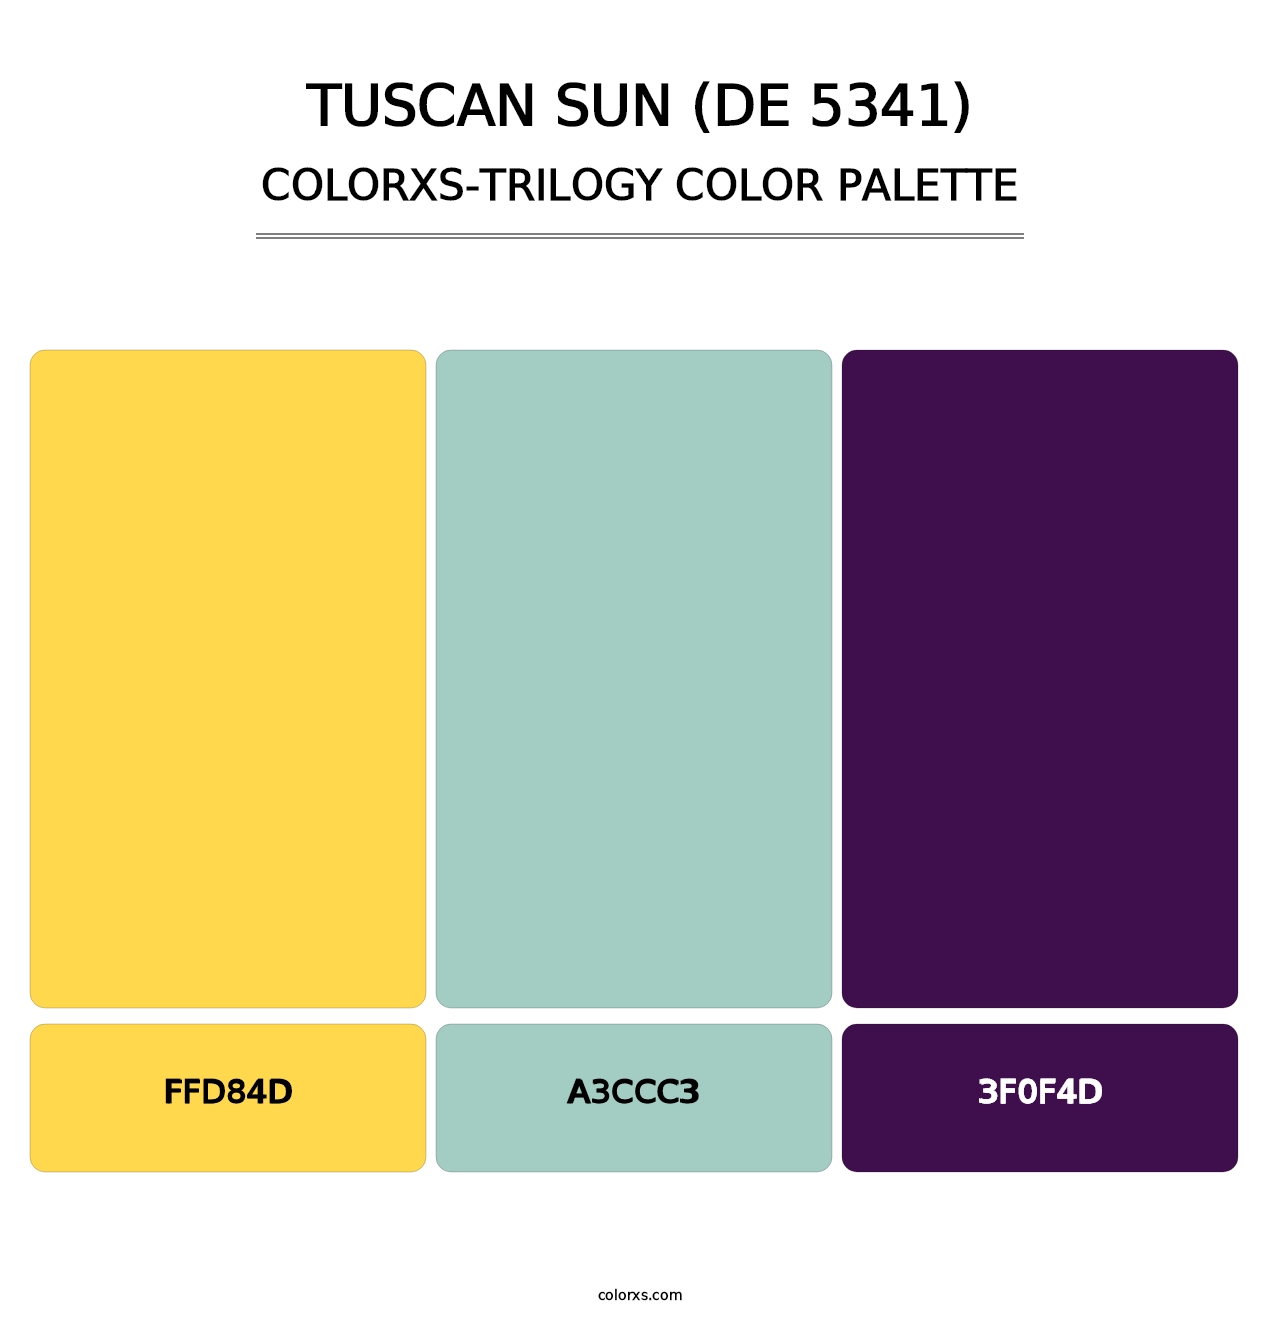 Tuscan Sun (DE 5341) - Colorxs Trilogy Palette